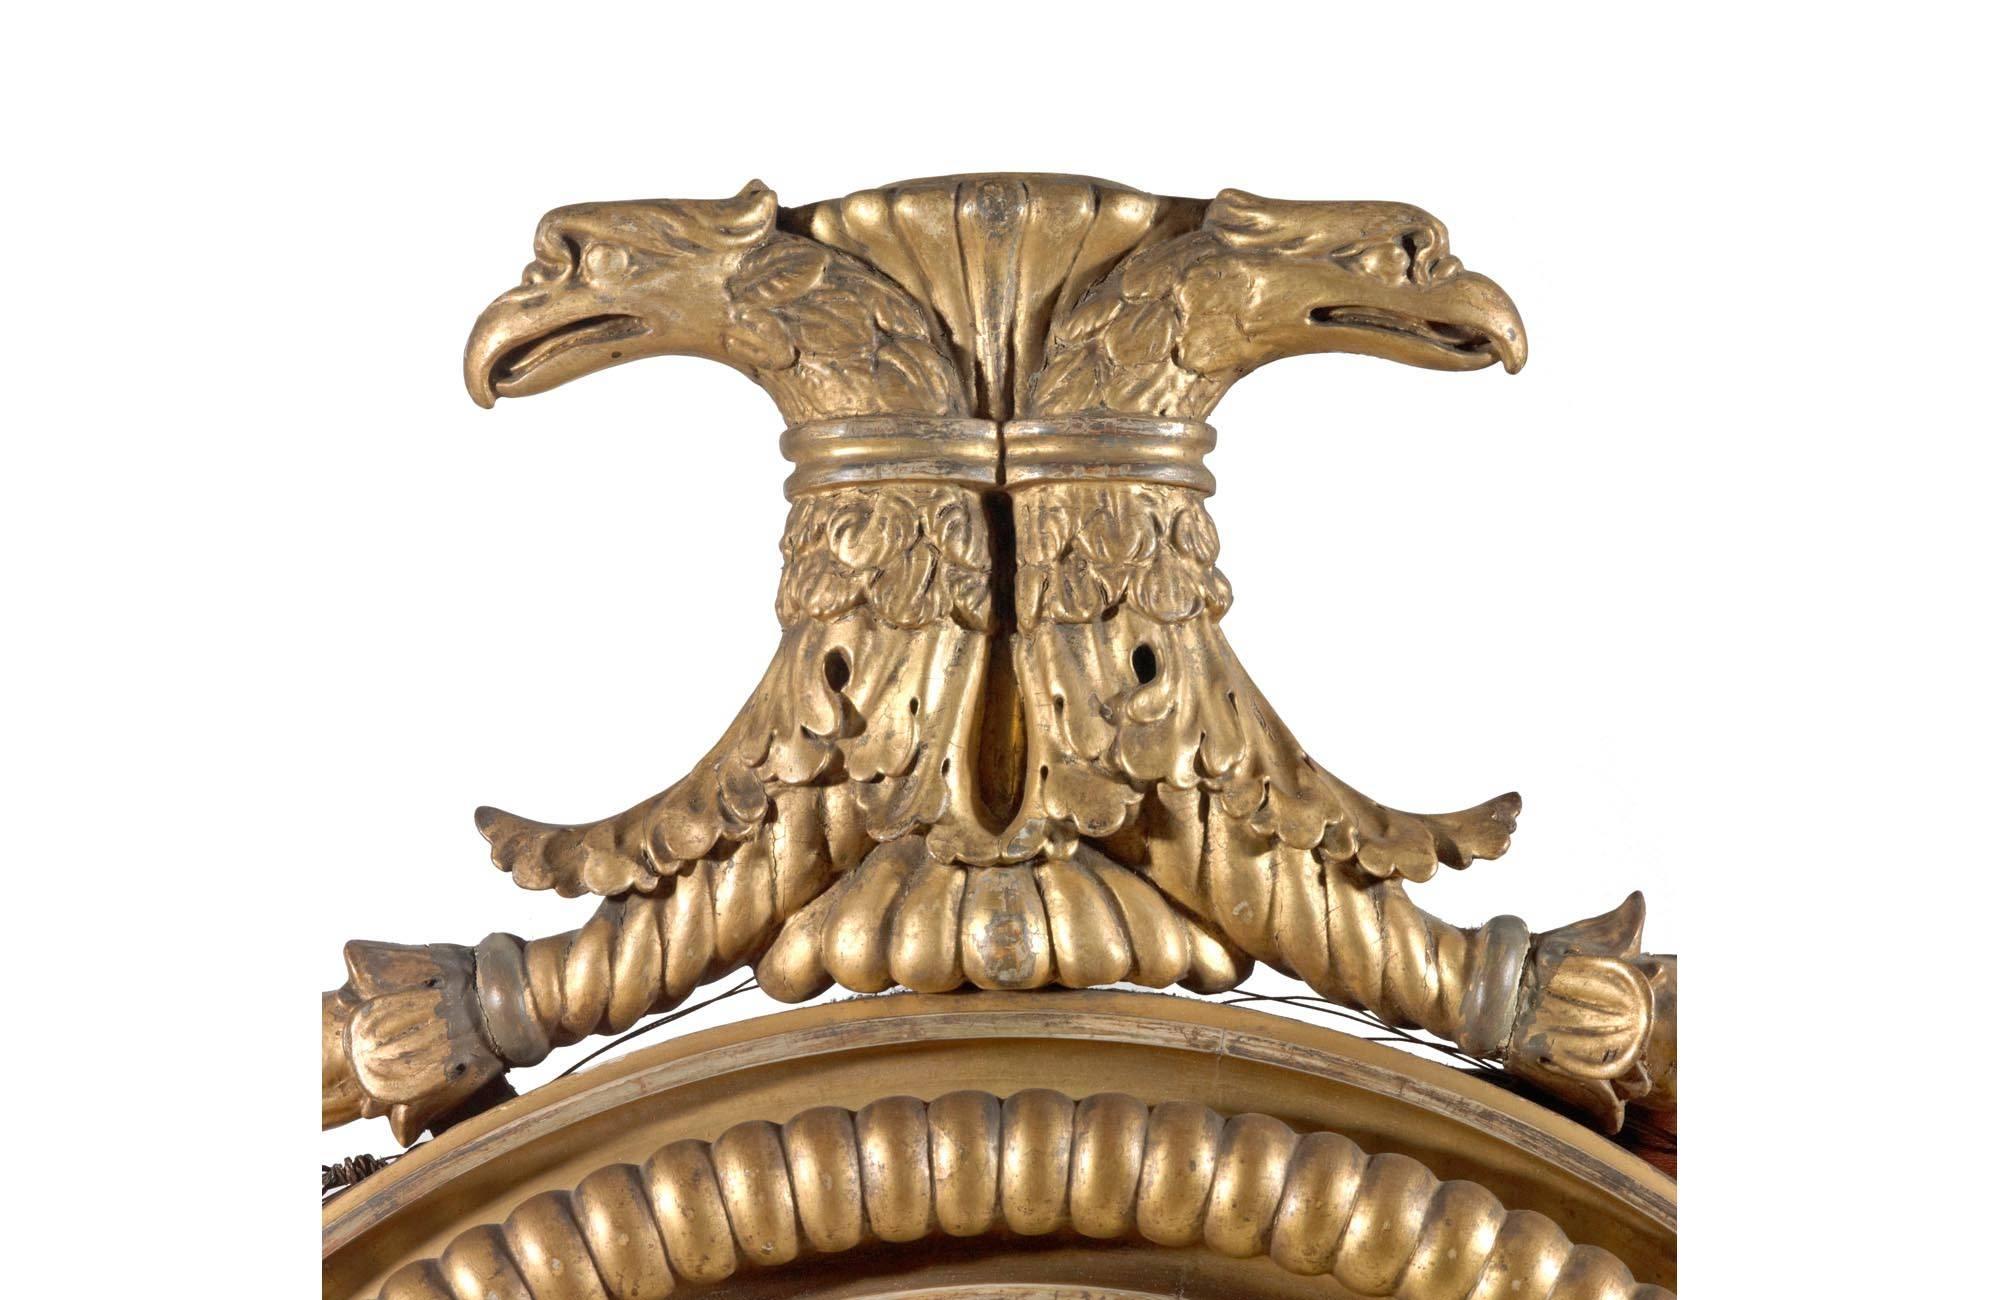 Vergoldeter Konvexspiegel aus dem frühen 19. Jahrhundert. Der innere und äußere Rand mit Verzierungen, das Ganze mit überhöhten Adlerköpfen über Fruchtschnitzereien. In der Mitte der Schürze ein Löwenkopf mit geschnitztem Blumendekor, zwei